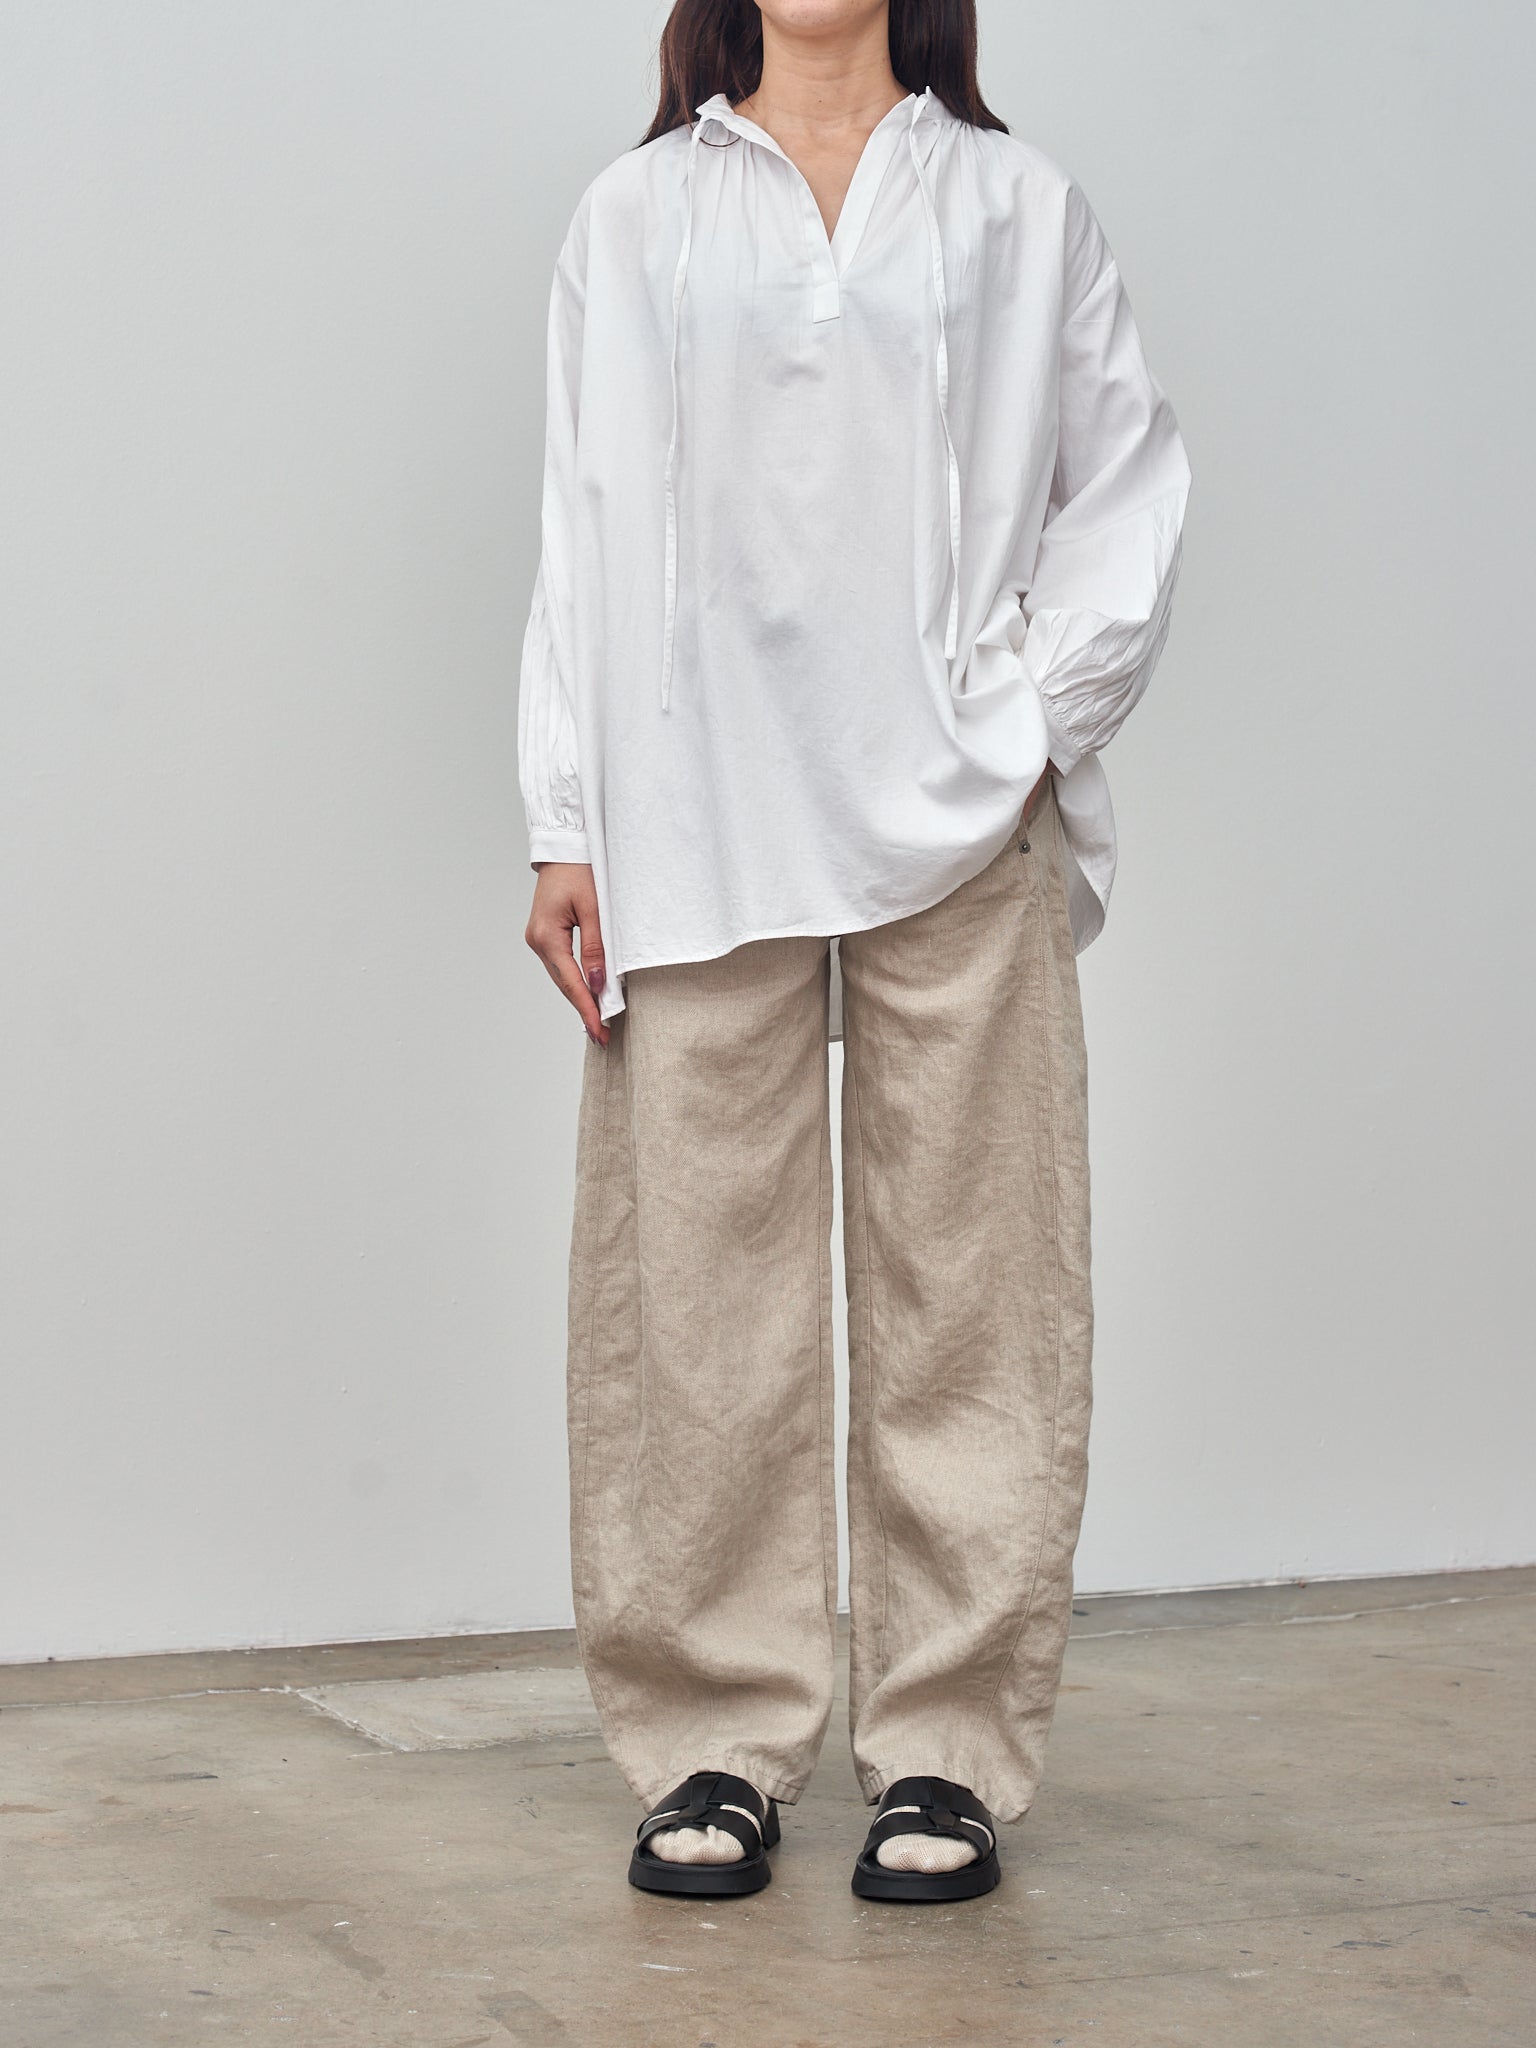 Namu Shop - Sayaka Davis Puffy Sleeve Blouse - White